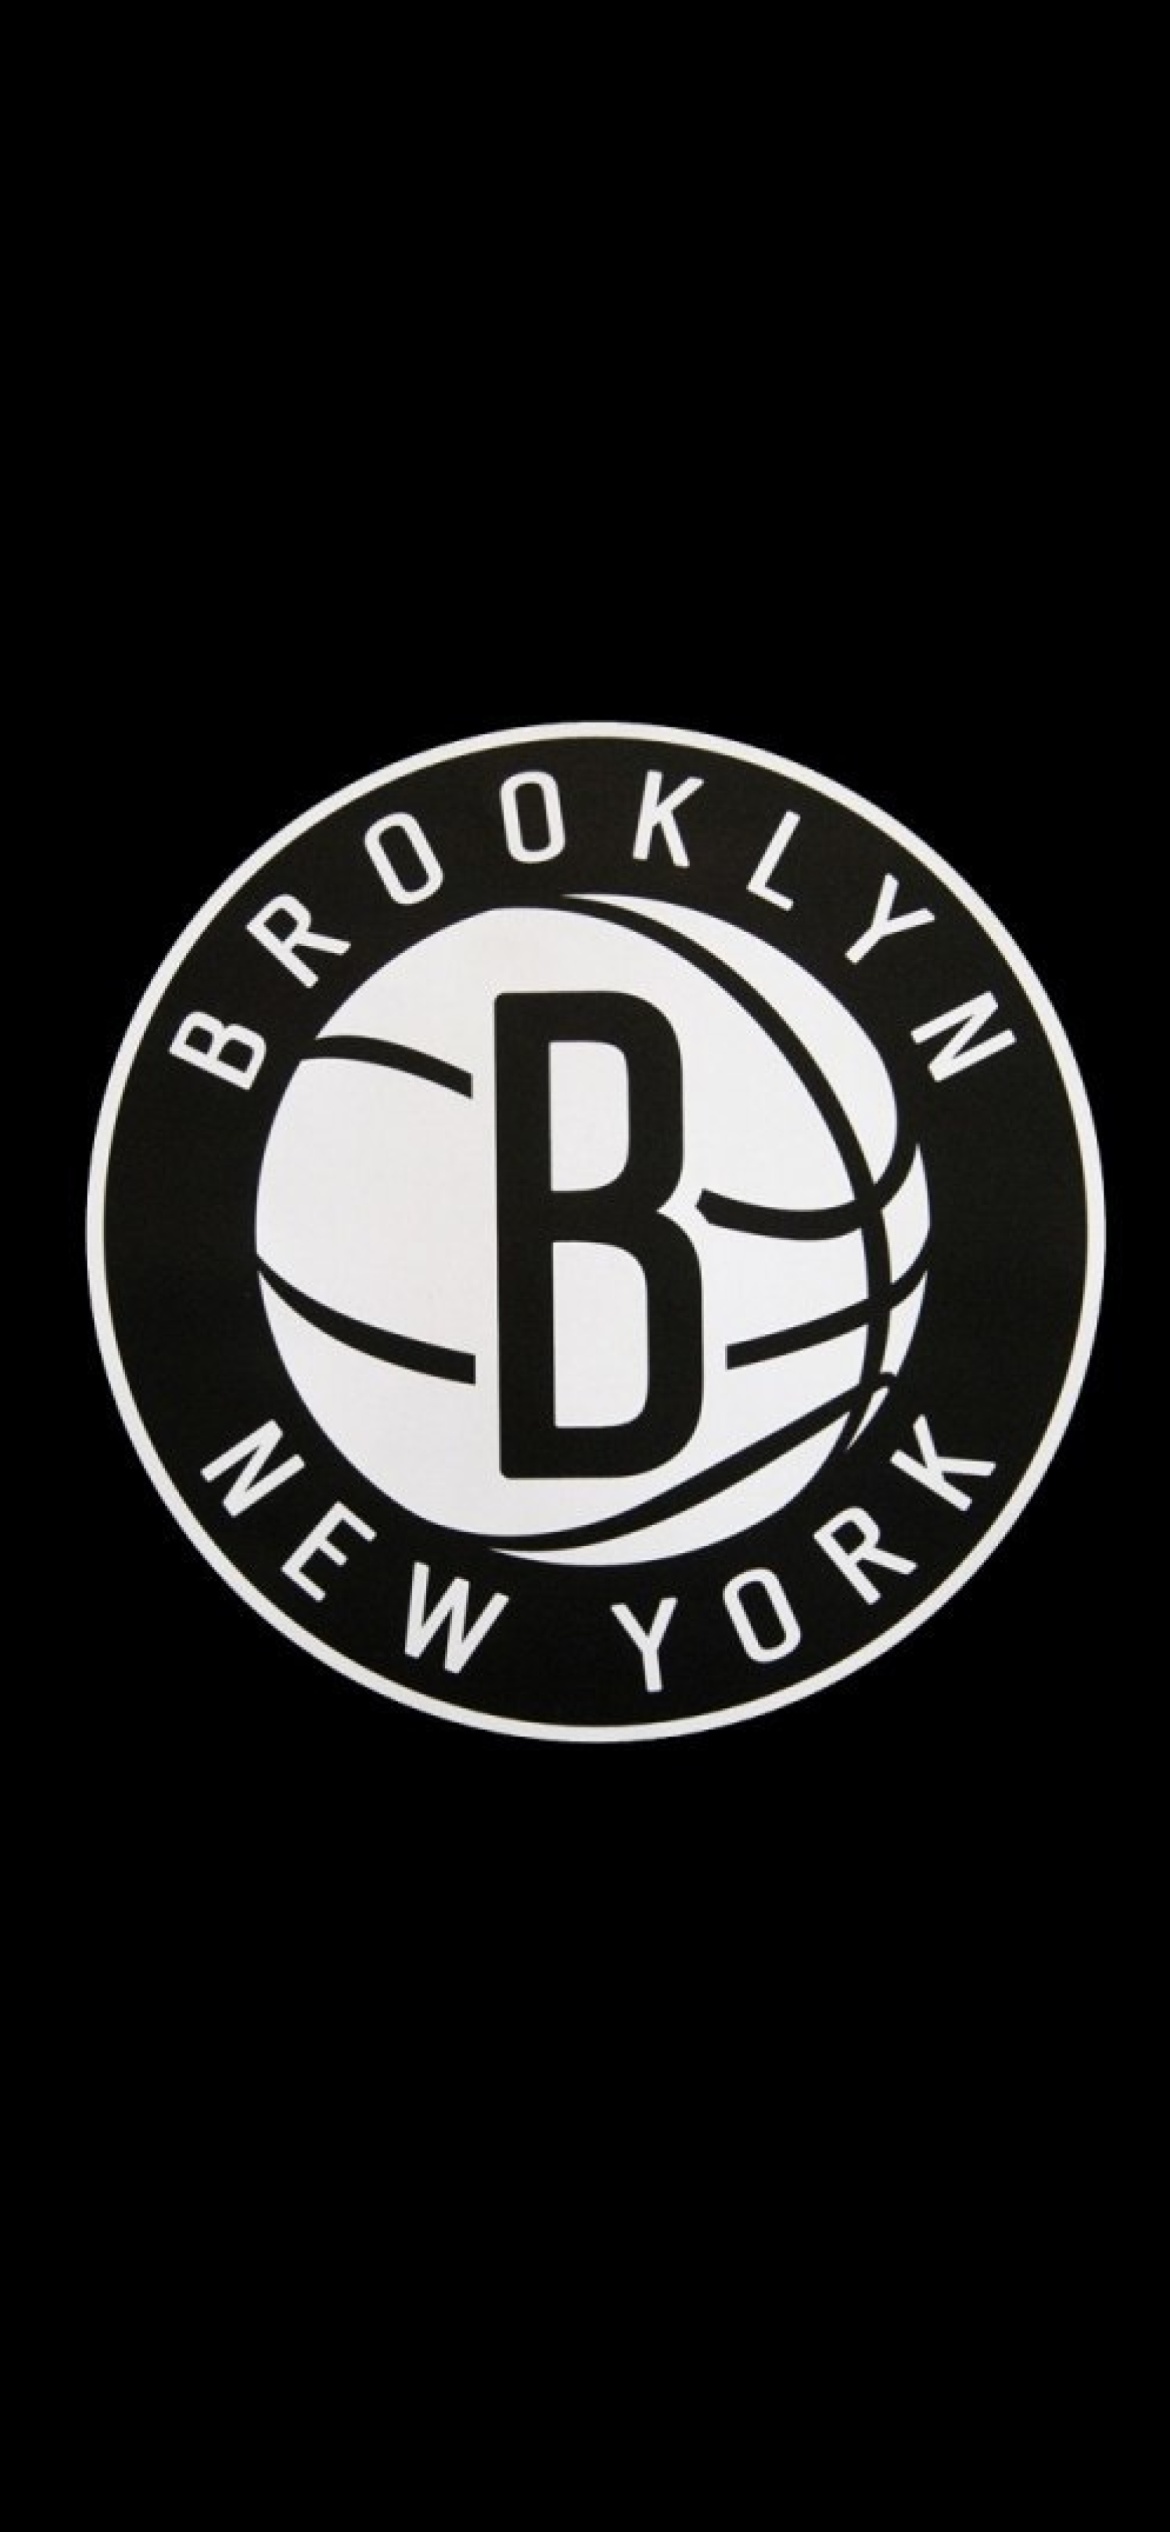 Brooklyn New York Logo screenshot #1 1170x2532